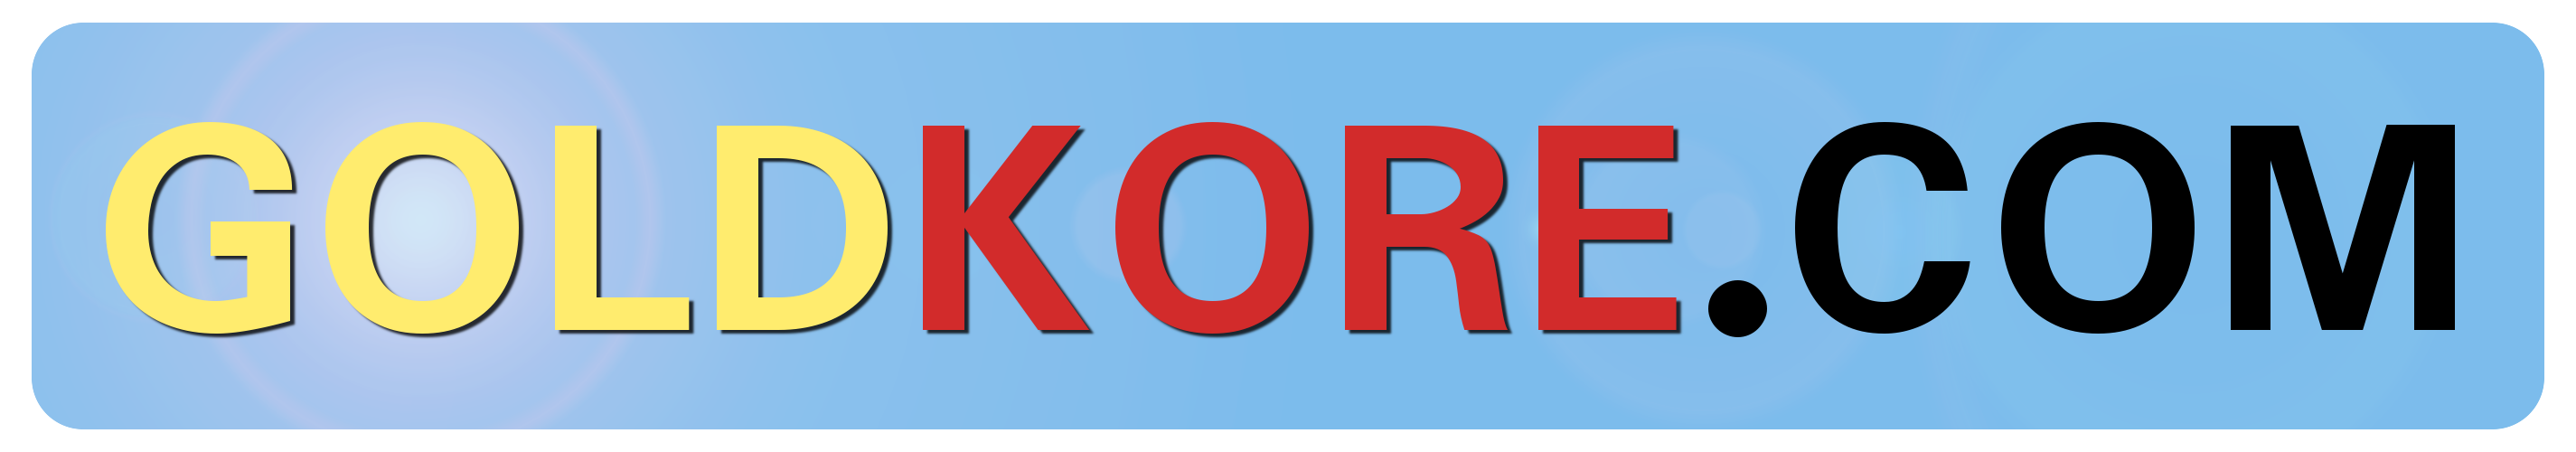 Logo GOLDKORE.COM 2850 x 500 Pixel / PNG Format